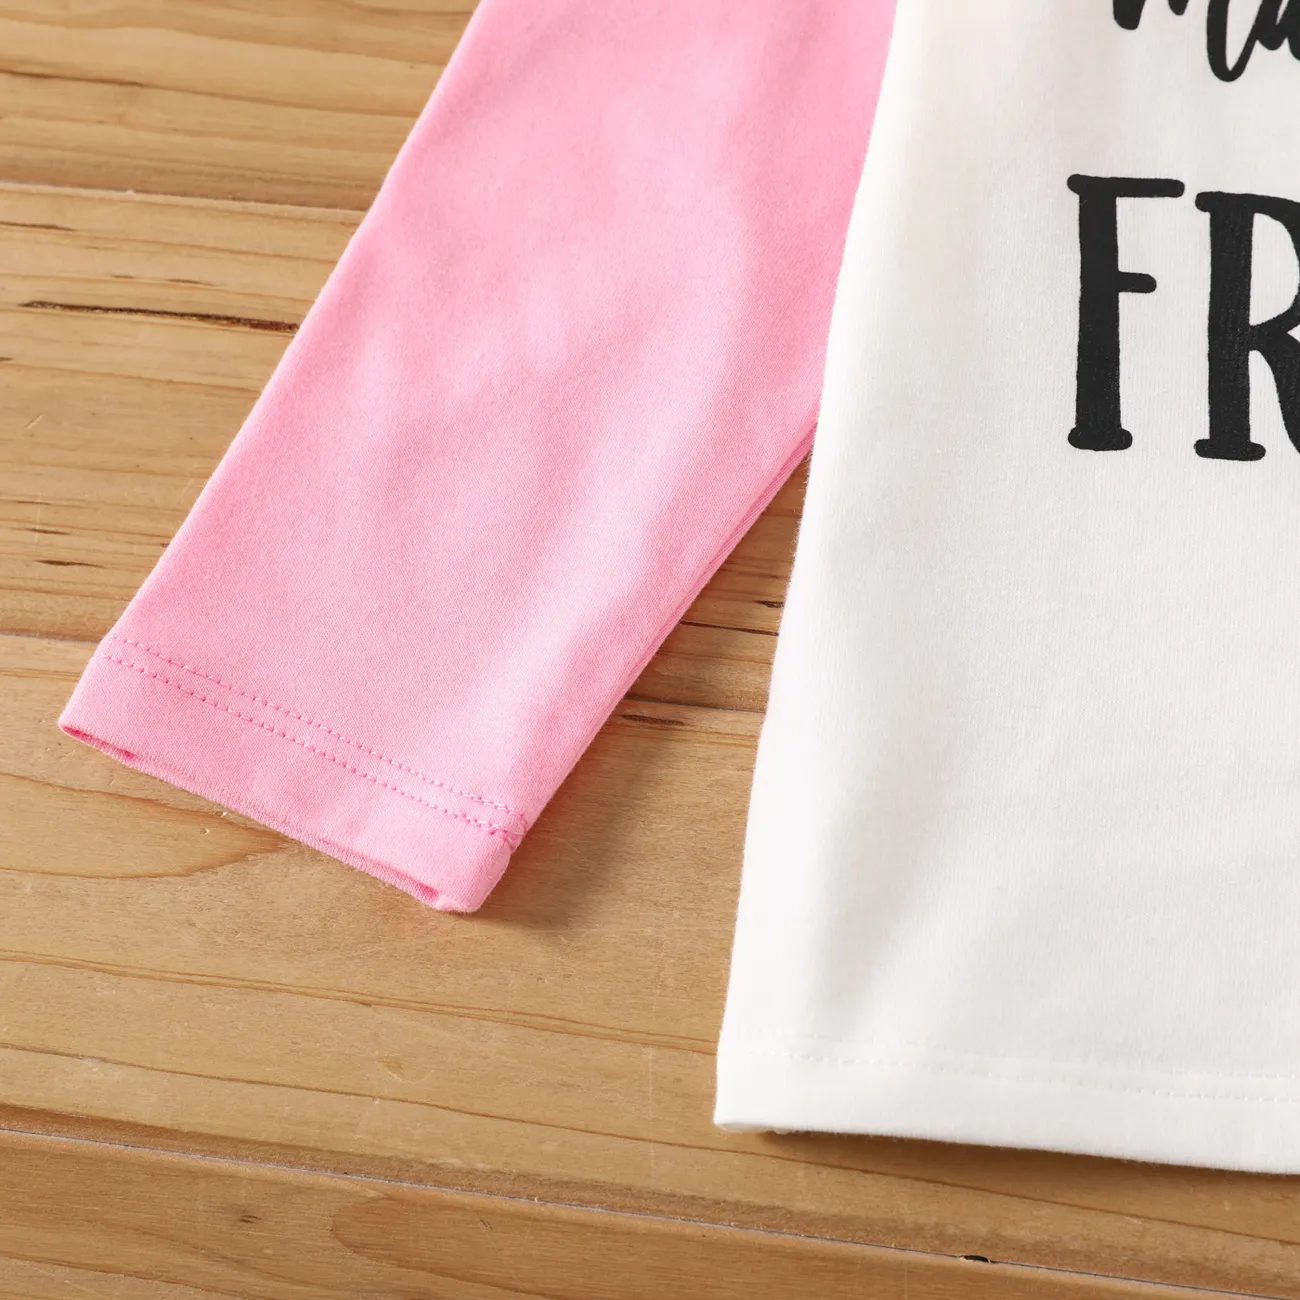 Criança Unissexo Costuras de tecido Básico Manga comprida T-shirts rosa branco big image 1